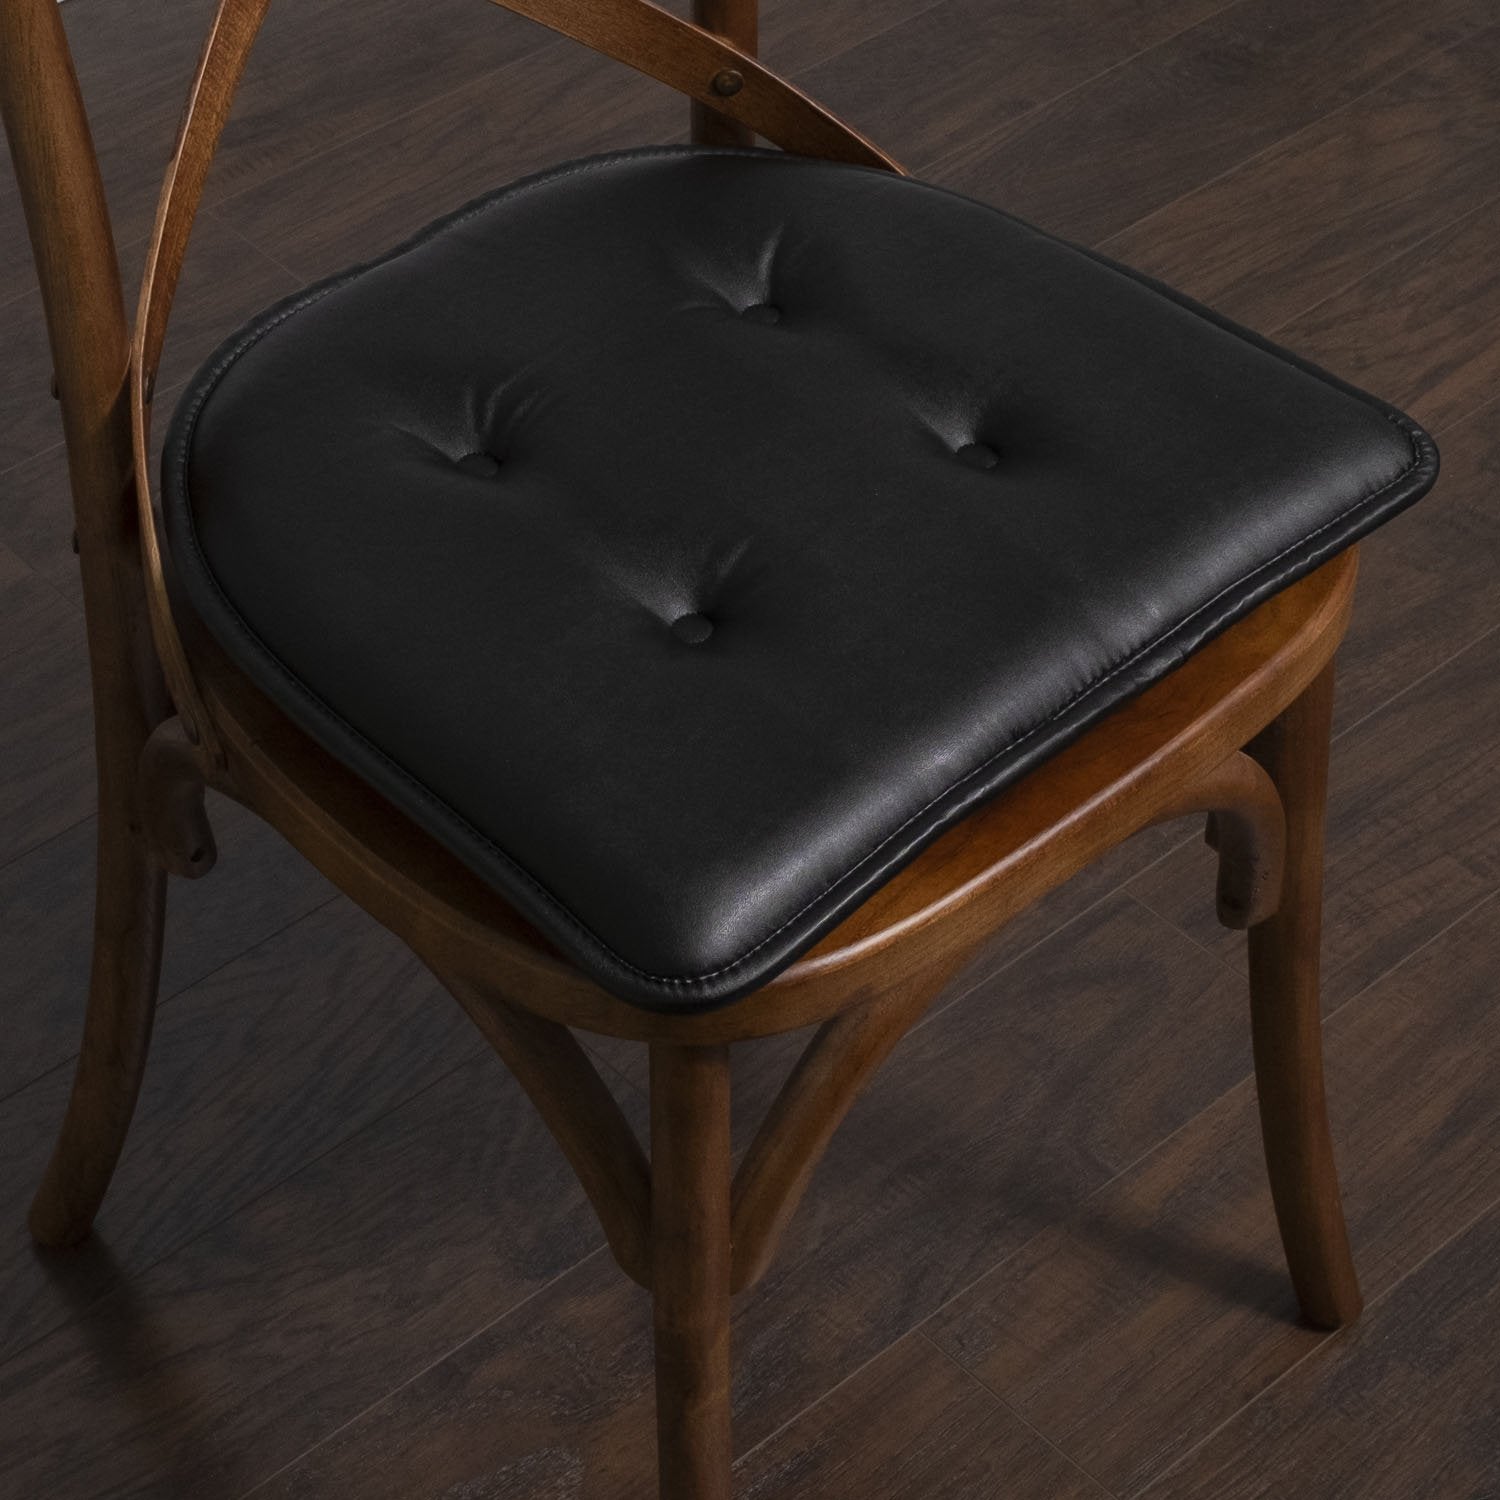 Faux Leather U Shape Chair Cushion Set Black - Chair